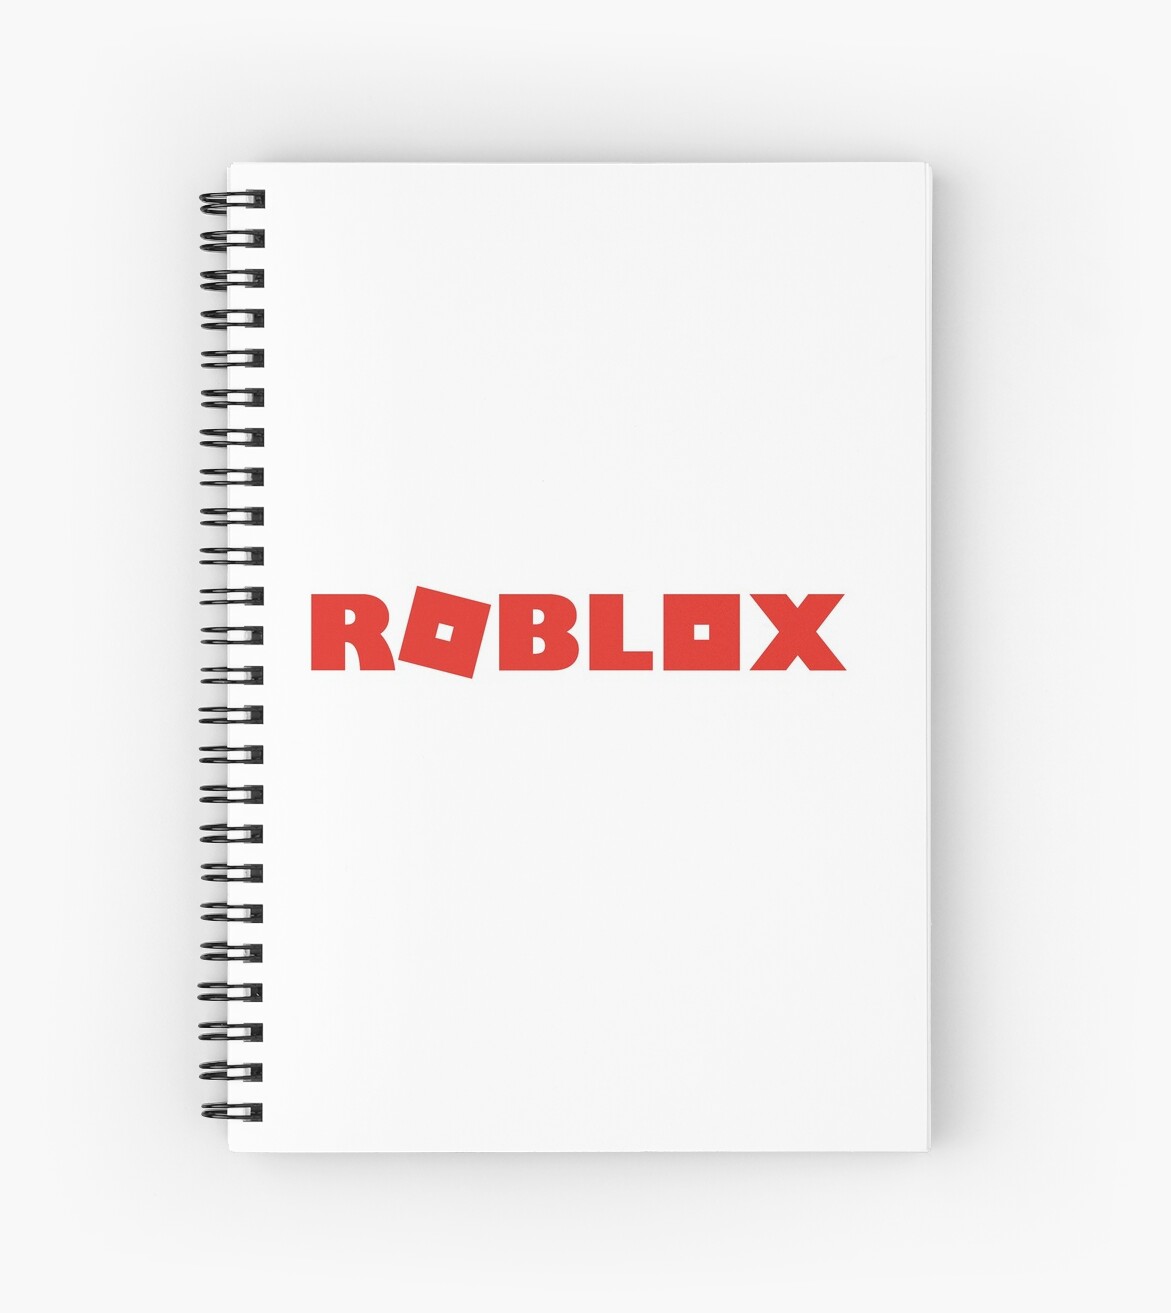 Cuaderno De Espiral Roblox De Jogoatilanroso Redbubble - cuadernos de espiral roblox juego redbubble